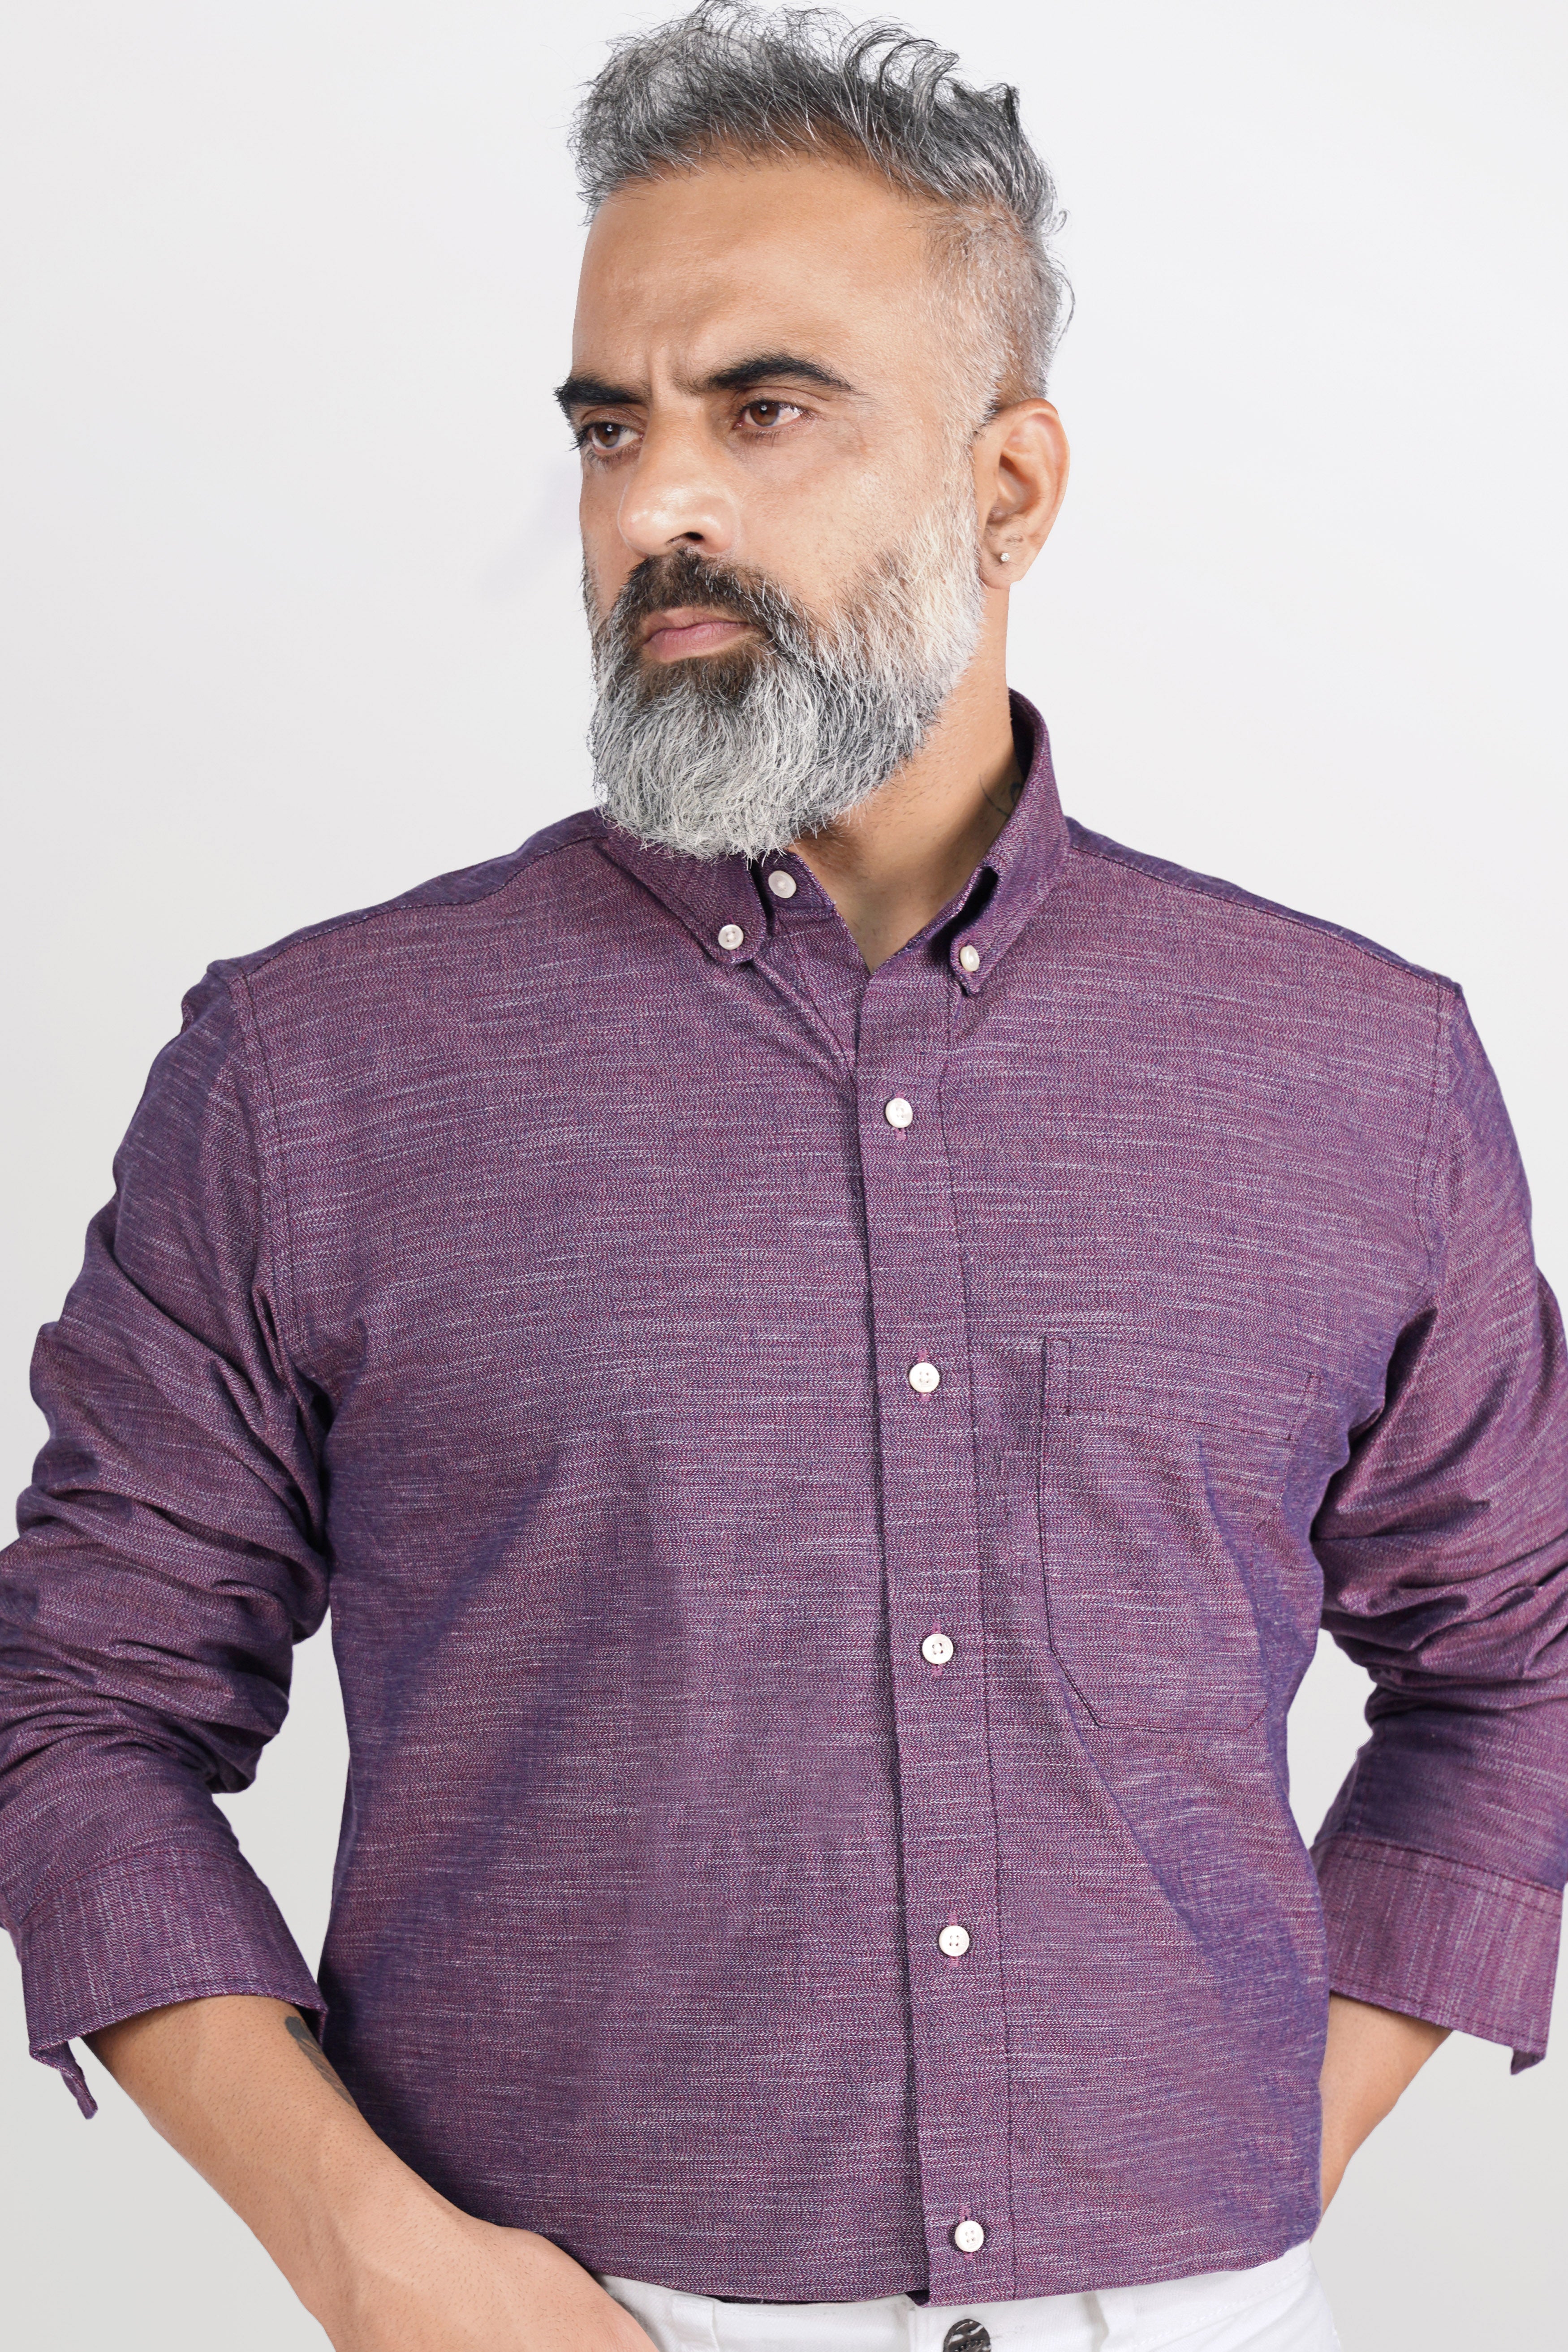 Byzantium Purple Chambray Button Down Shirt